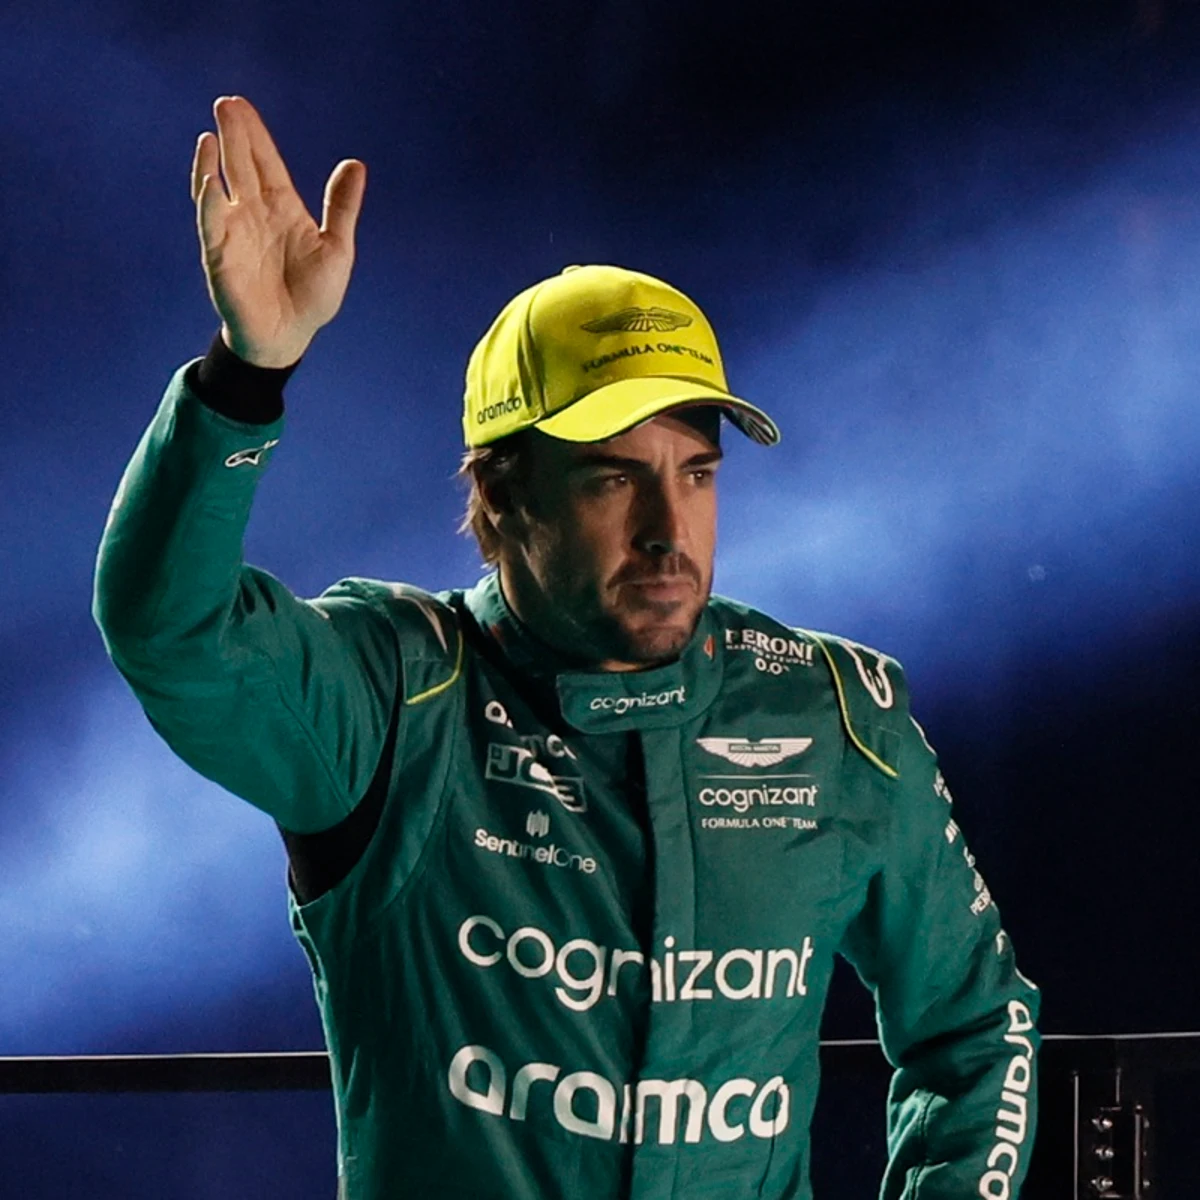 Relevo on X: ¿El mejor disfraz de carnaval de 2024? Este 'Aston Martin' de Fernando  Alonso es un EQUIPAZO. 😂 🎥 @malsinu  / X